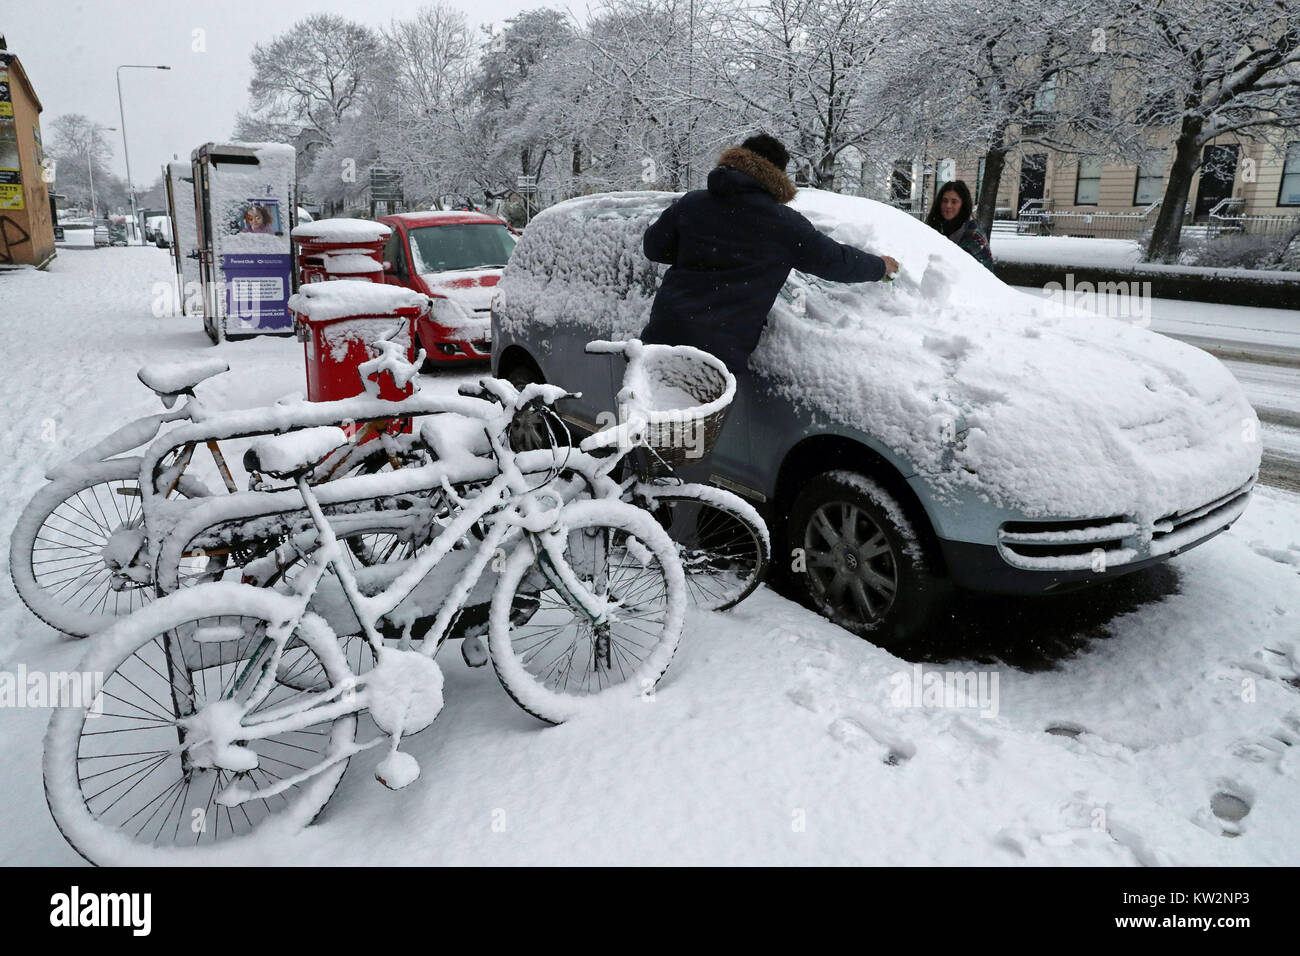 Un couple déblayer la neige de leur voiture à Glasgow, que la Grande-Bretagne a vu l'une des nuits les plus froides de l'année avec des températures à la baisse pour atteindre moins 12.3C à Loch Glascarnoch dans les Highlands écossais. Banque D'Images